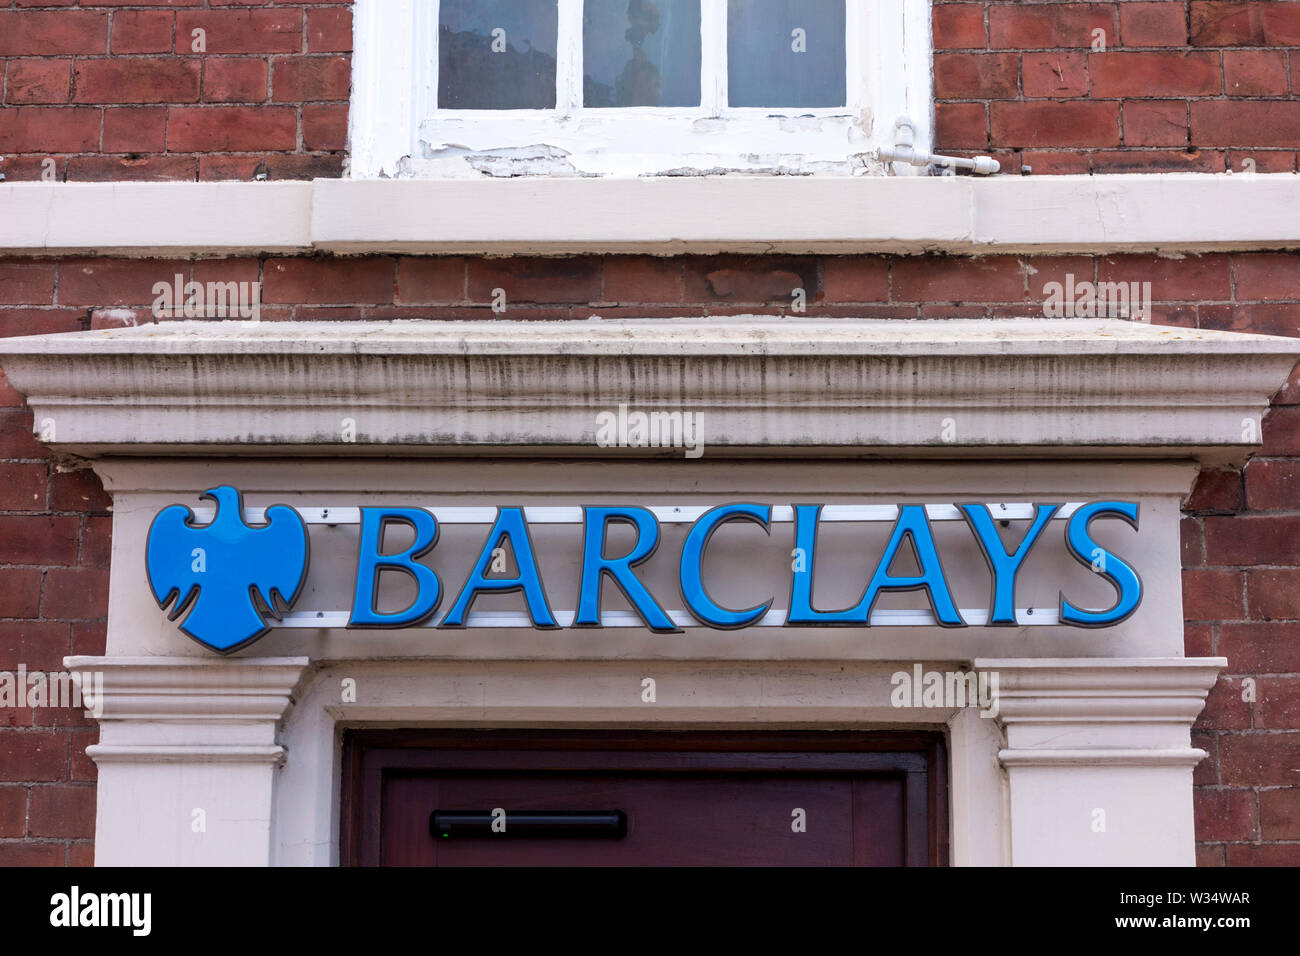 Barclays Bank sign, Stourbridge, West Midlands, UK Stock Photo